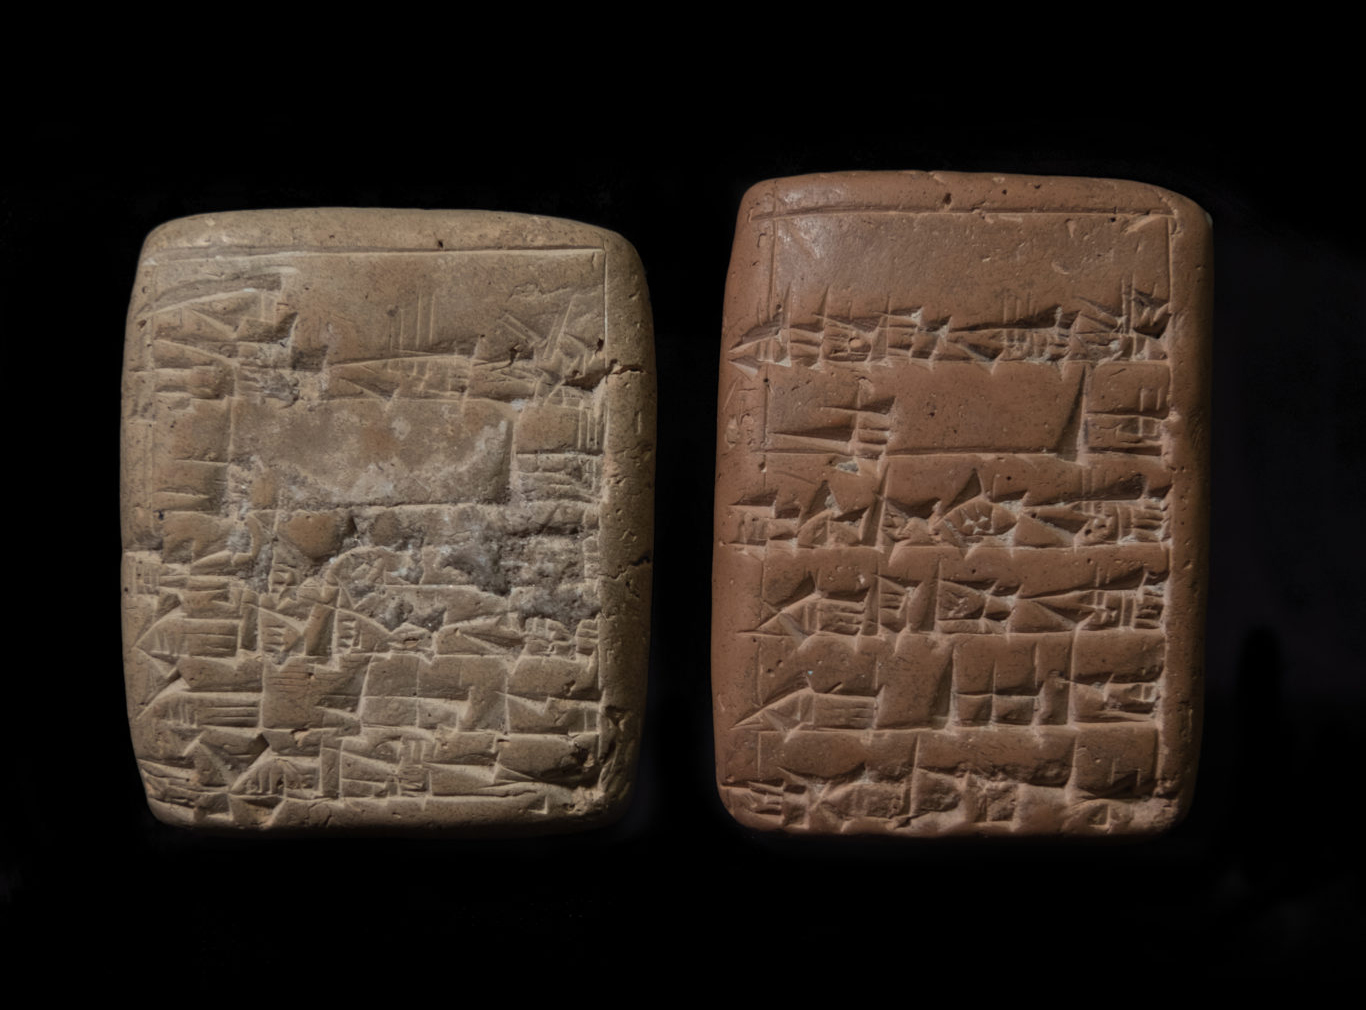 Sumerian Tablets, 2100 BCE